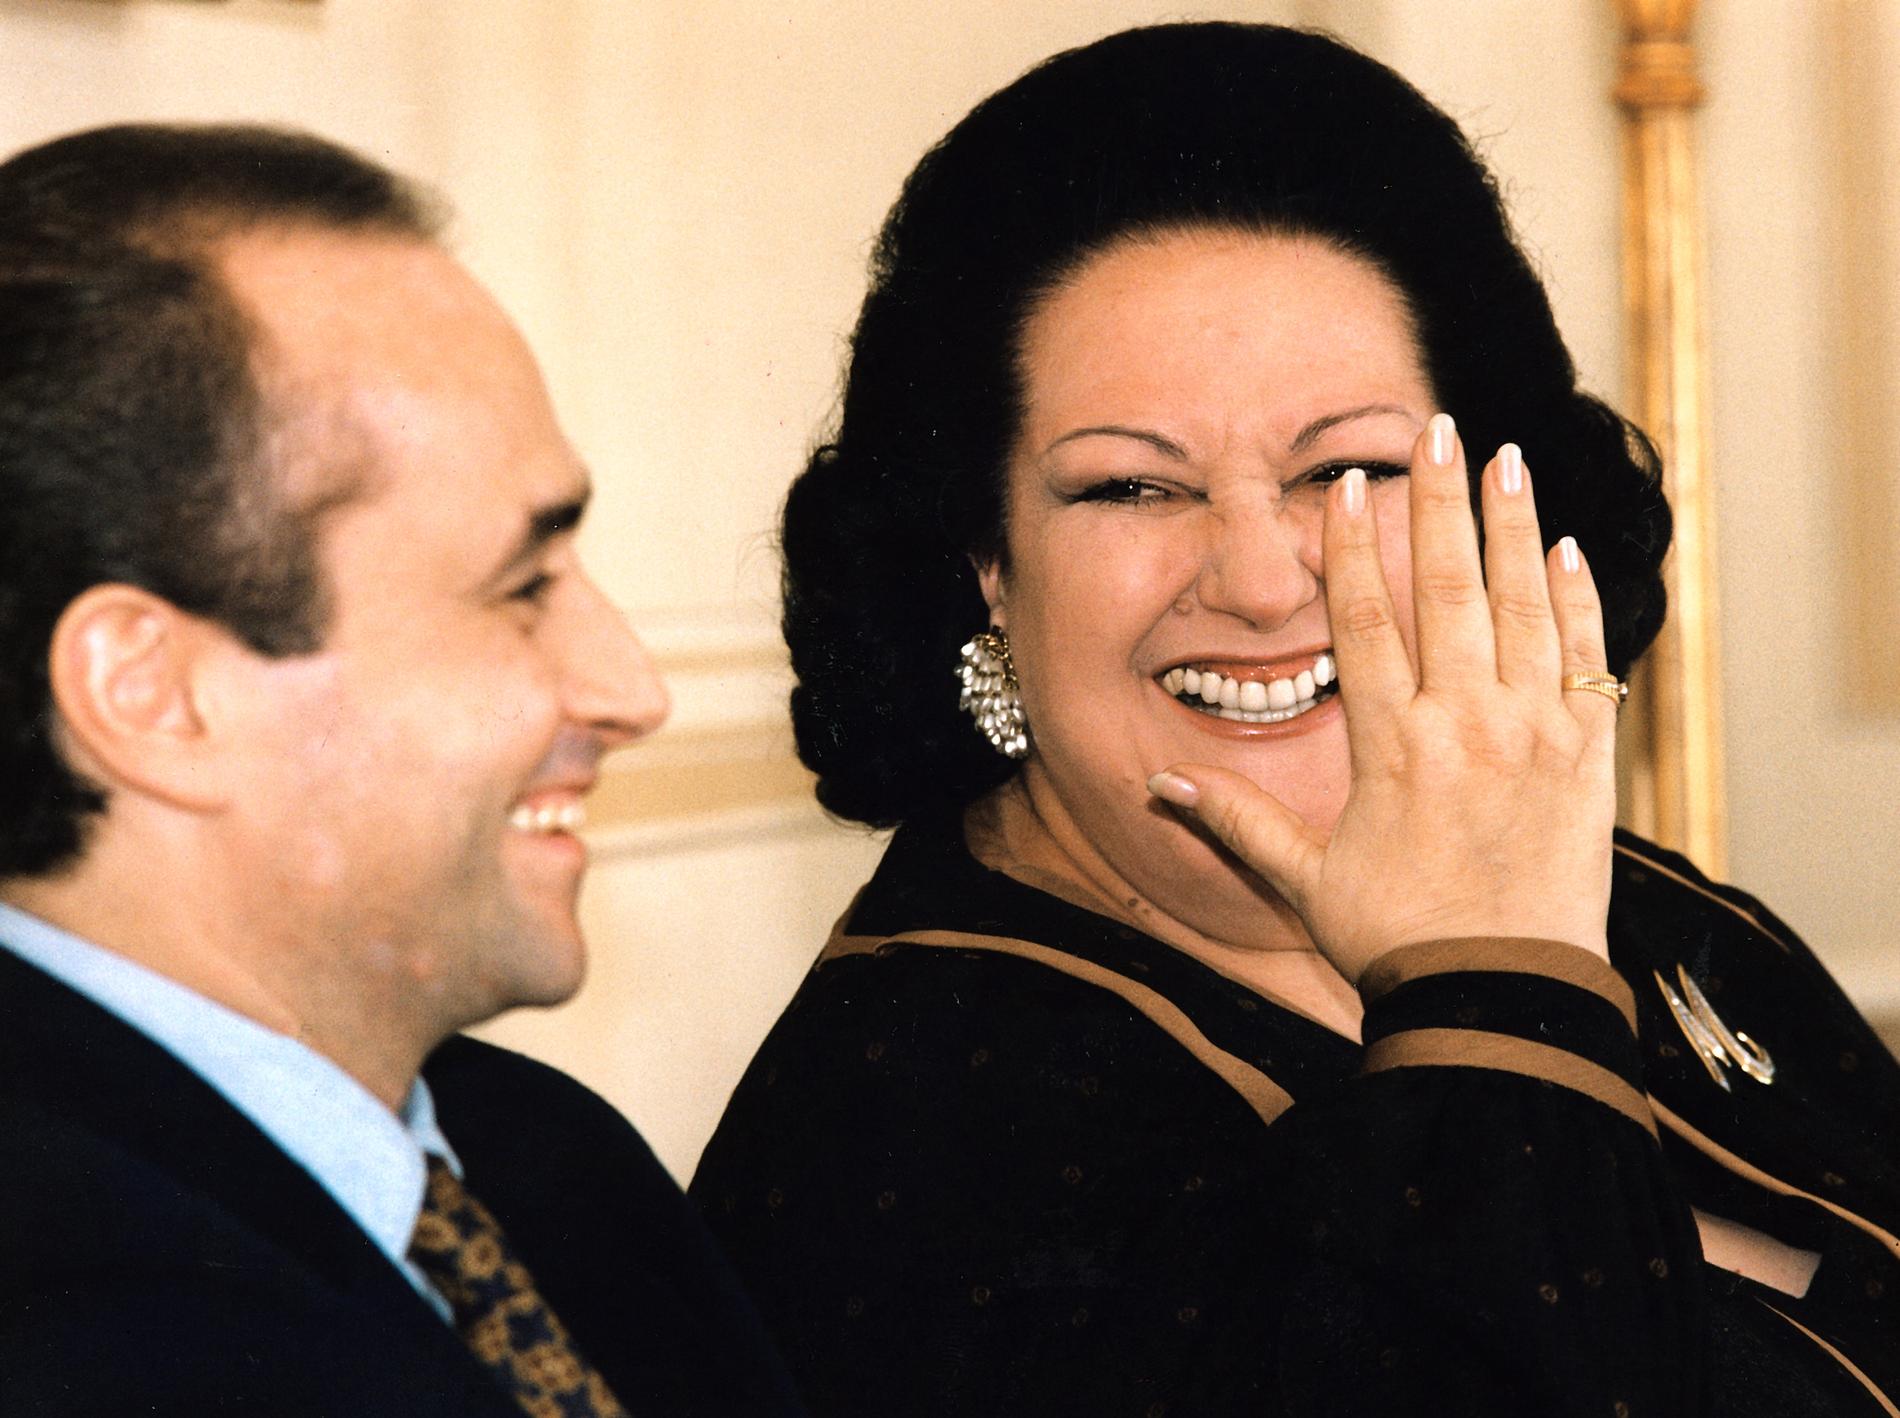 Montserrat Caballé och Jose Carreras i Stockholm på Grand Hotell. 7 oktober 1991.